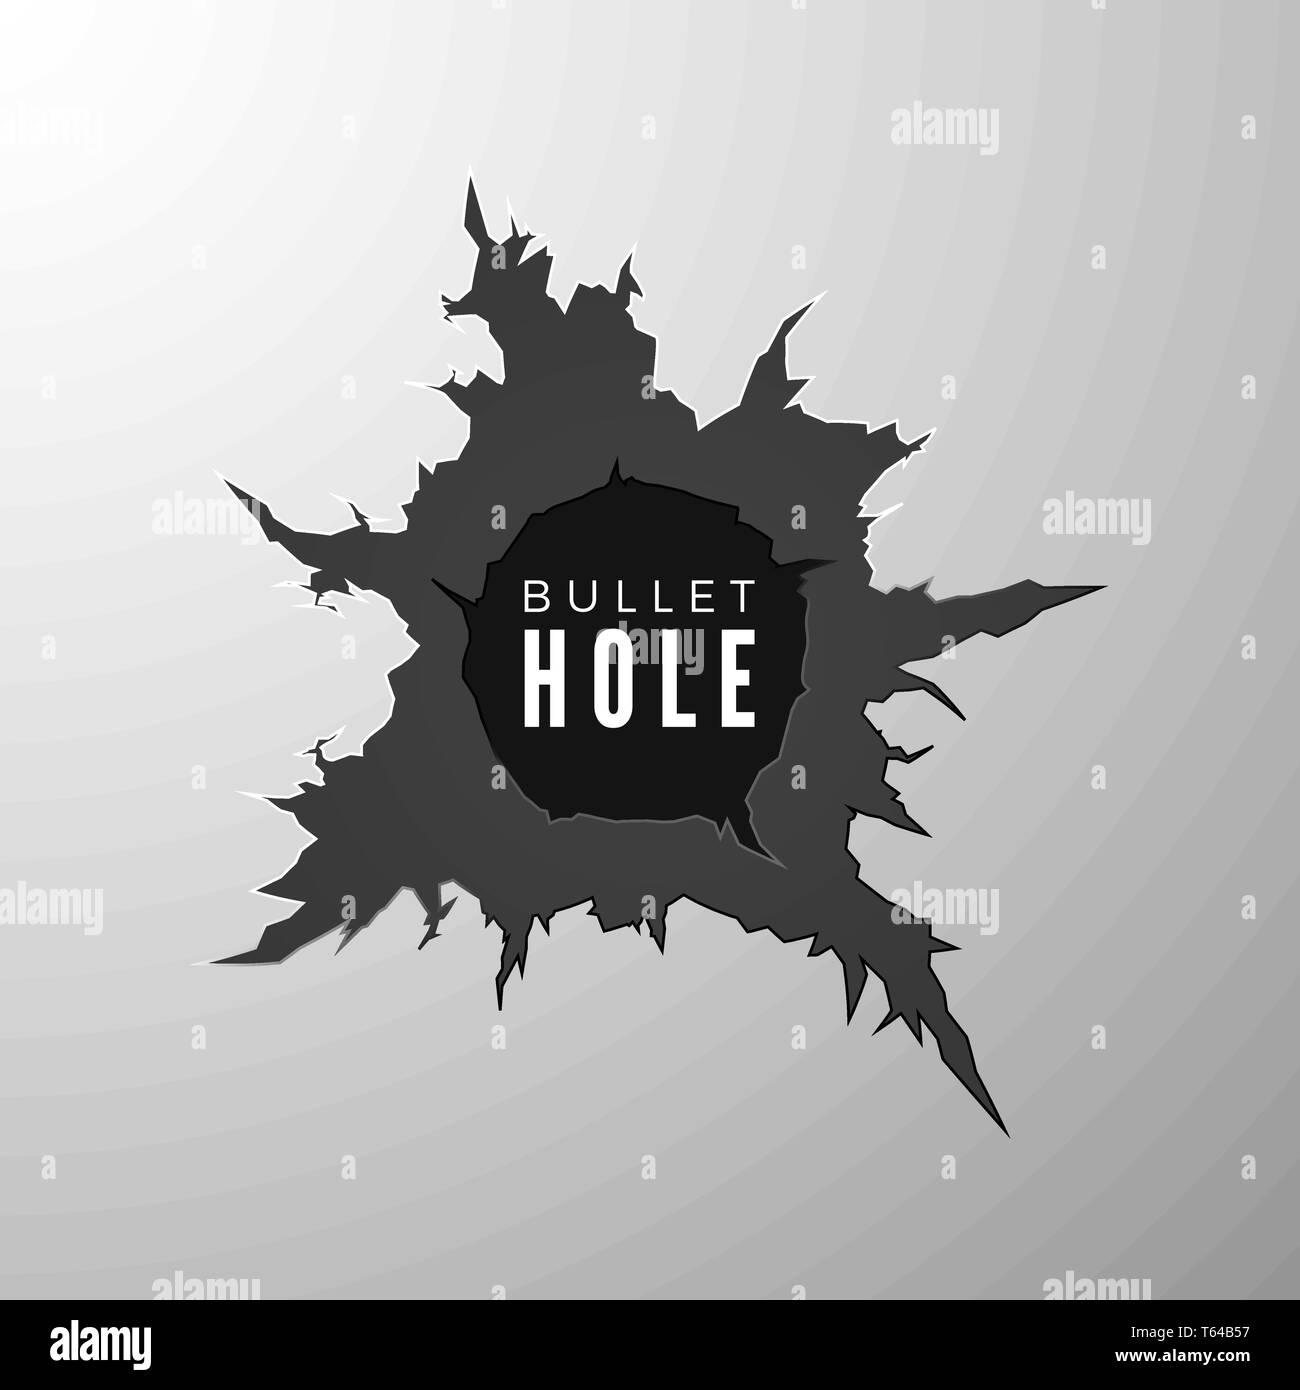 Bullet hole banner. Design element torn metal surfase. Vector illustration Stock Vector